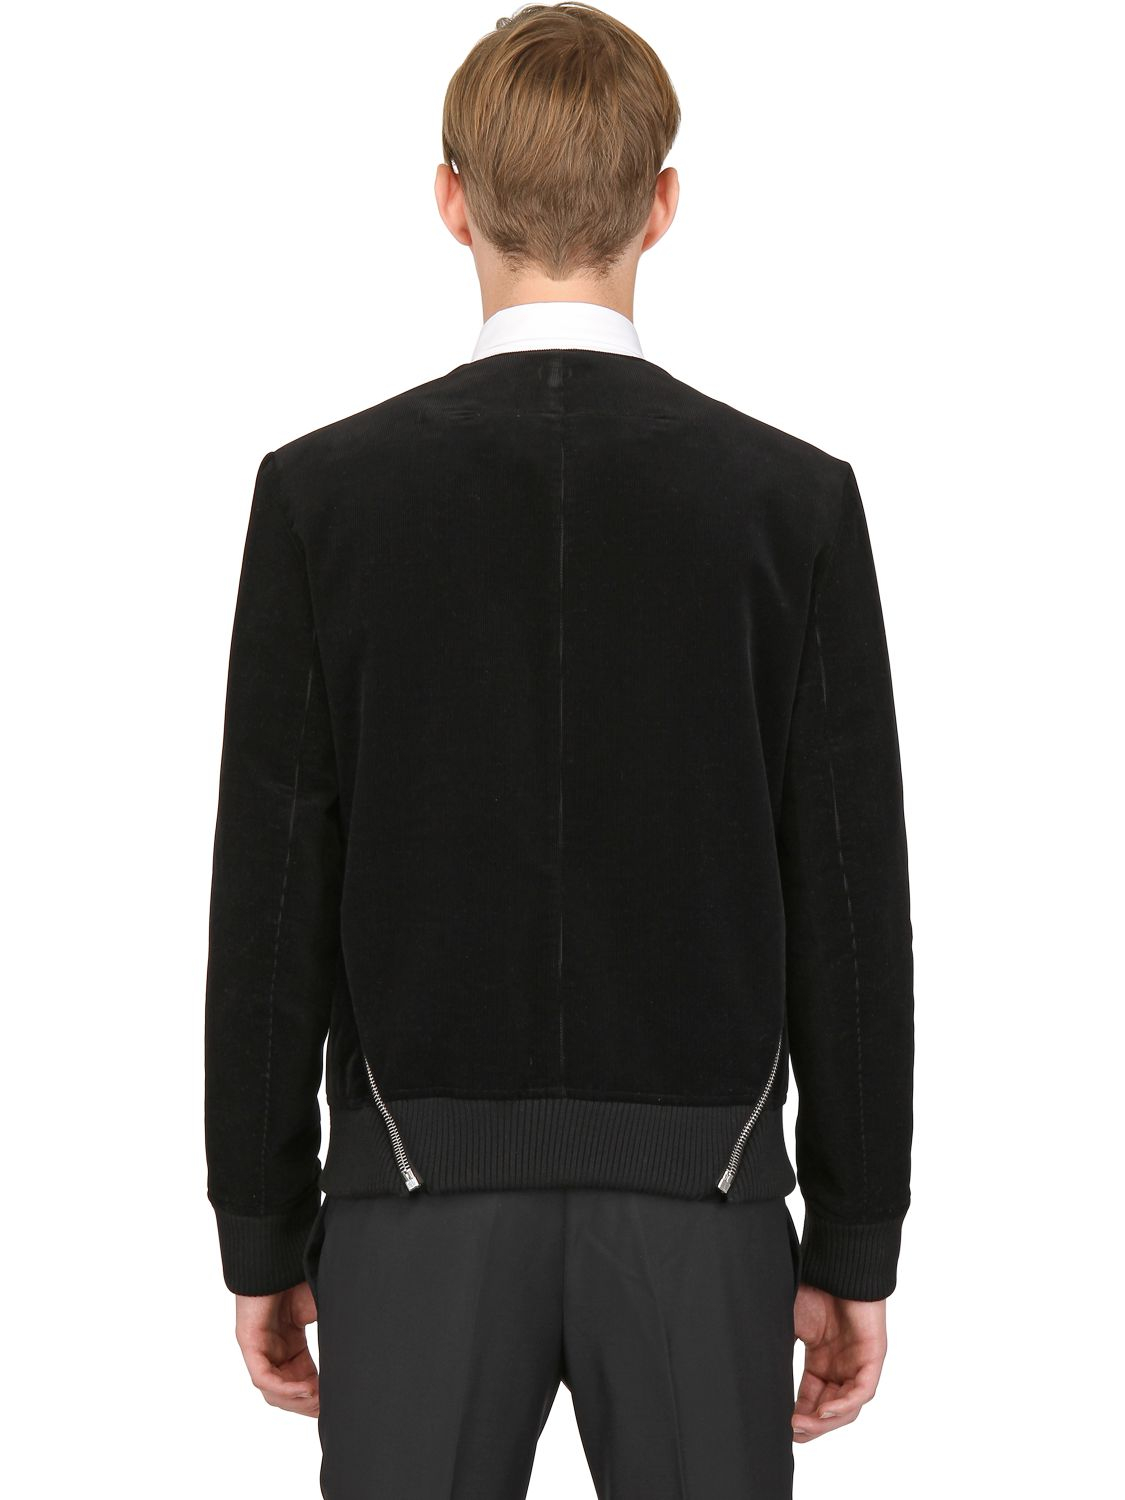 Givenchy Corduroy Velvet Bolero Jacket in Black for Men - Lyst